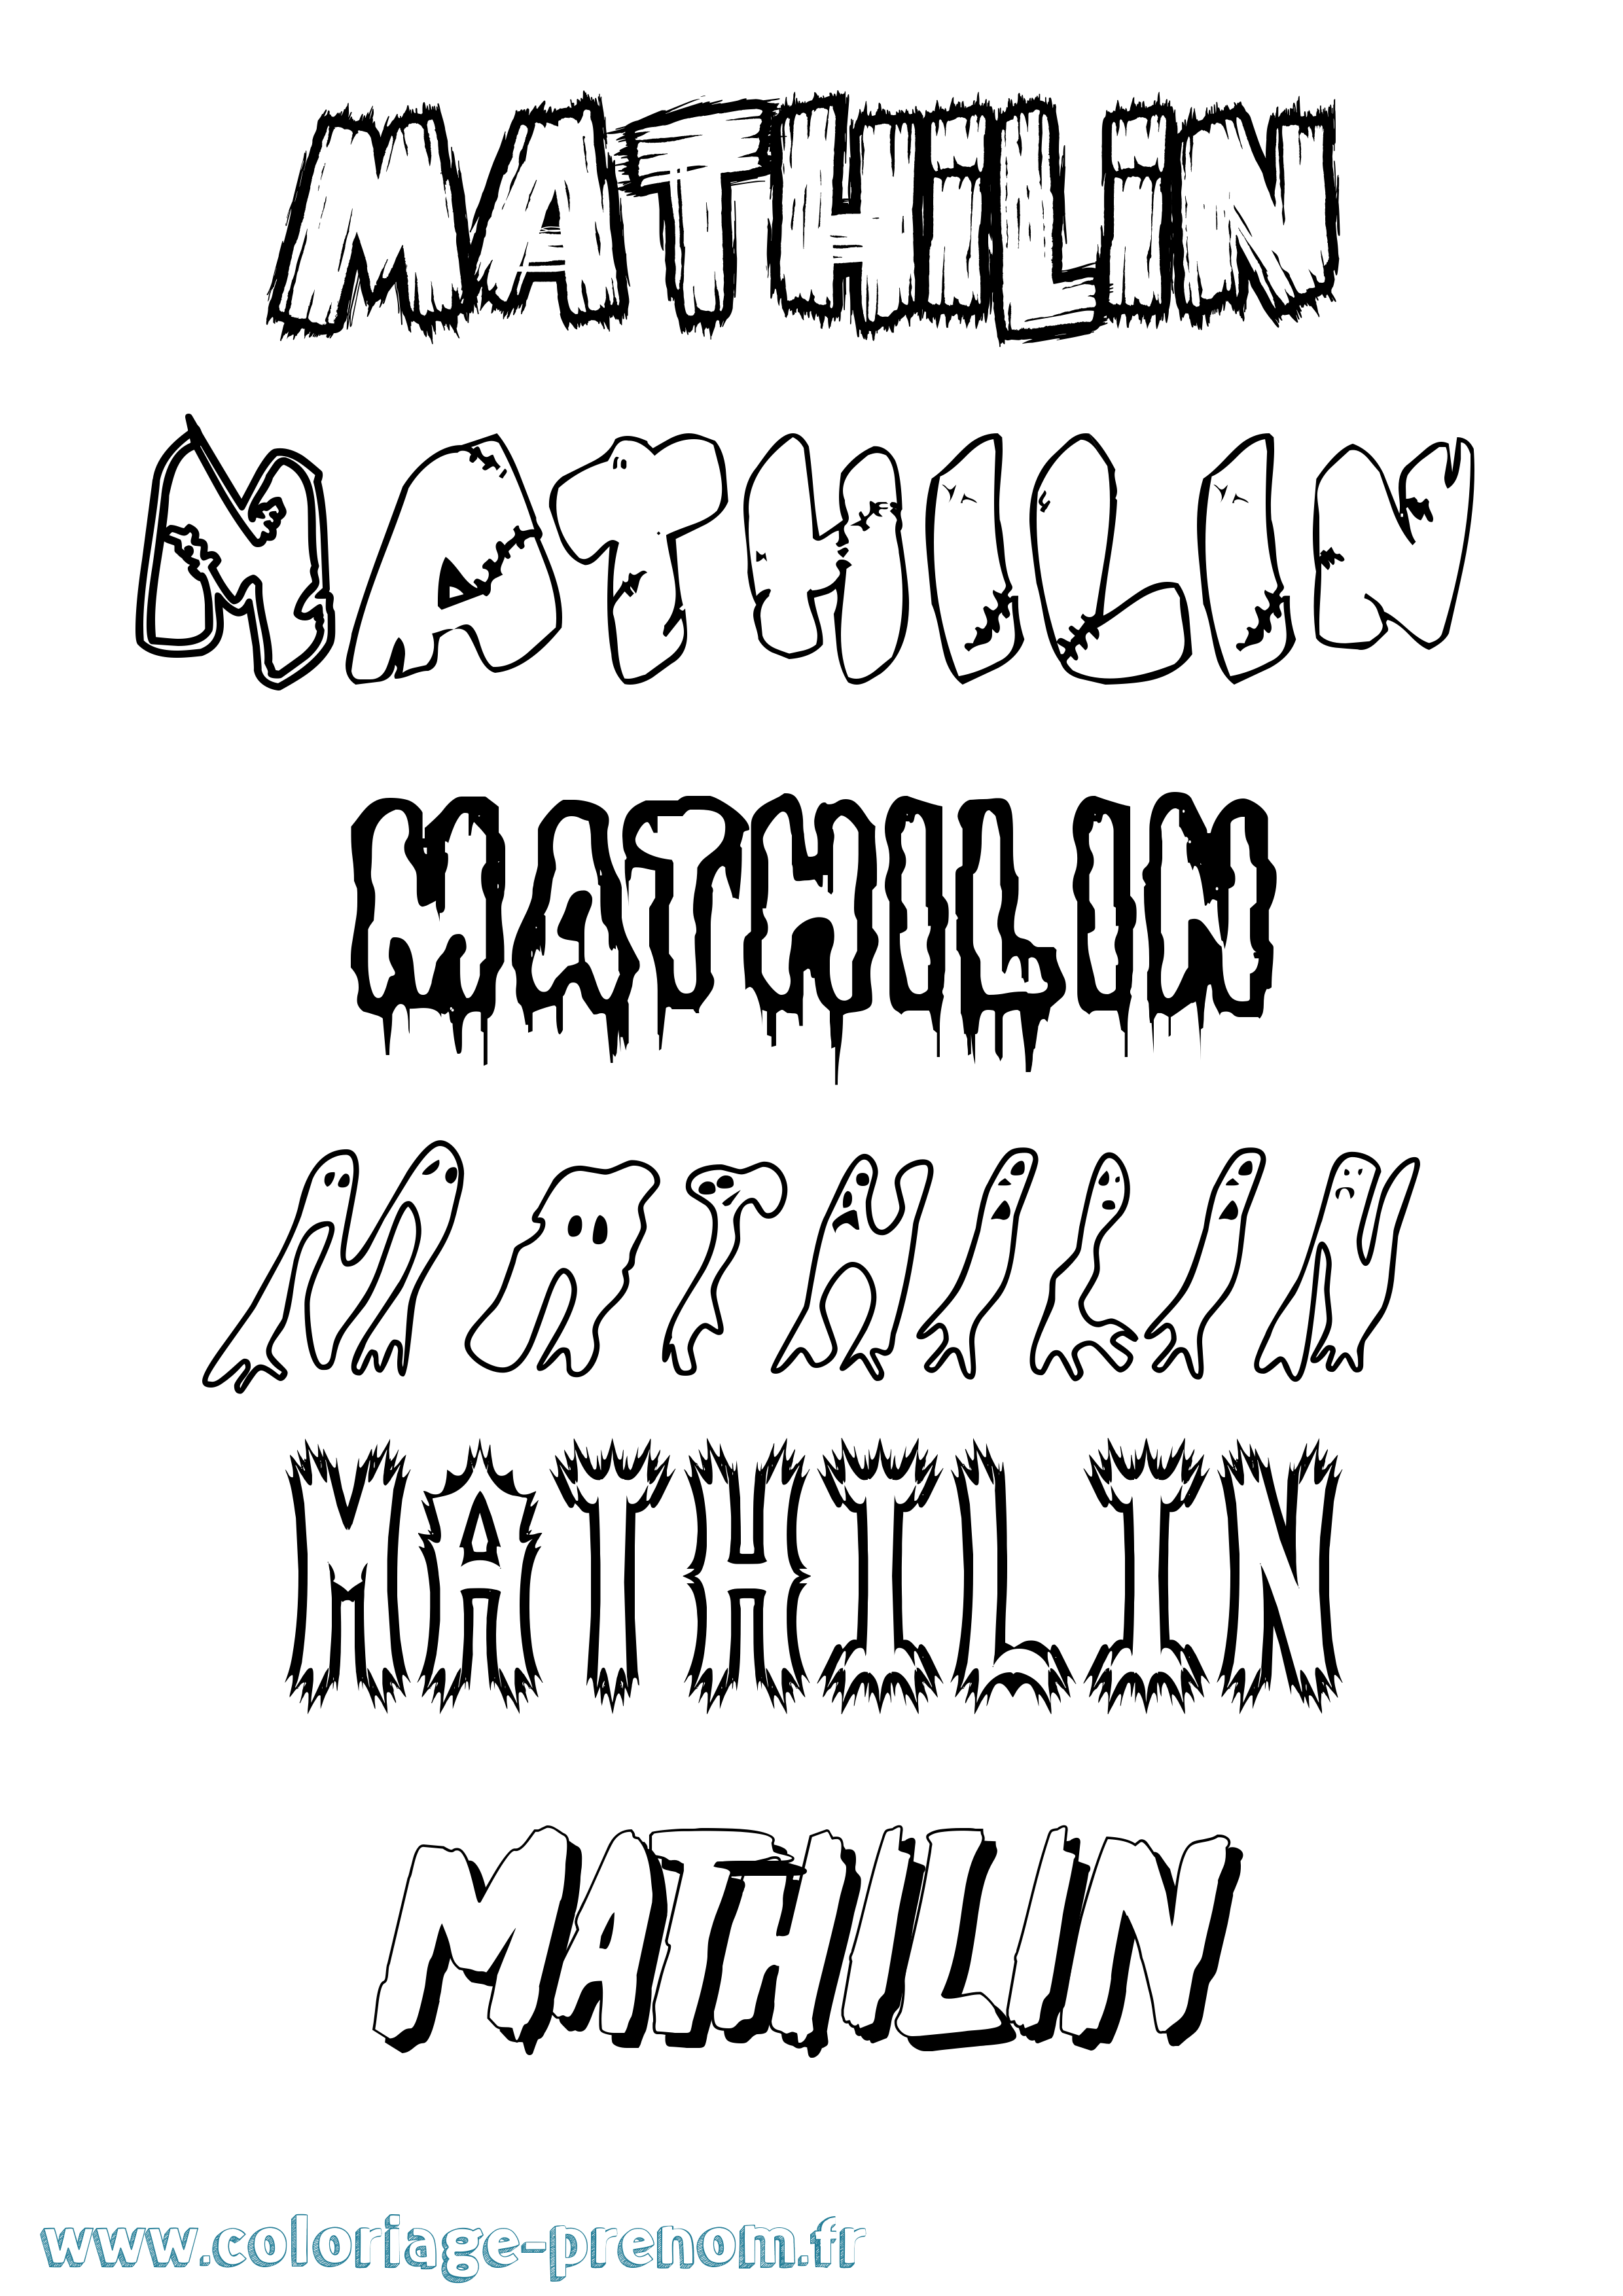 Coloriage prénom Mathilin Frisson